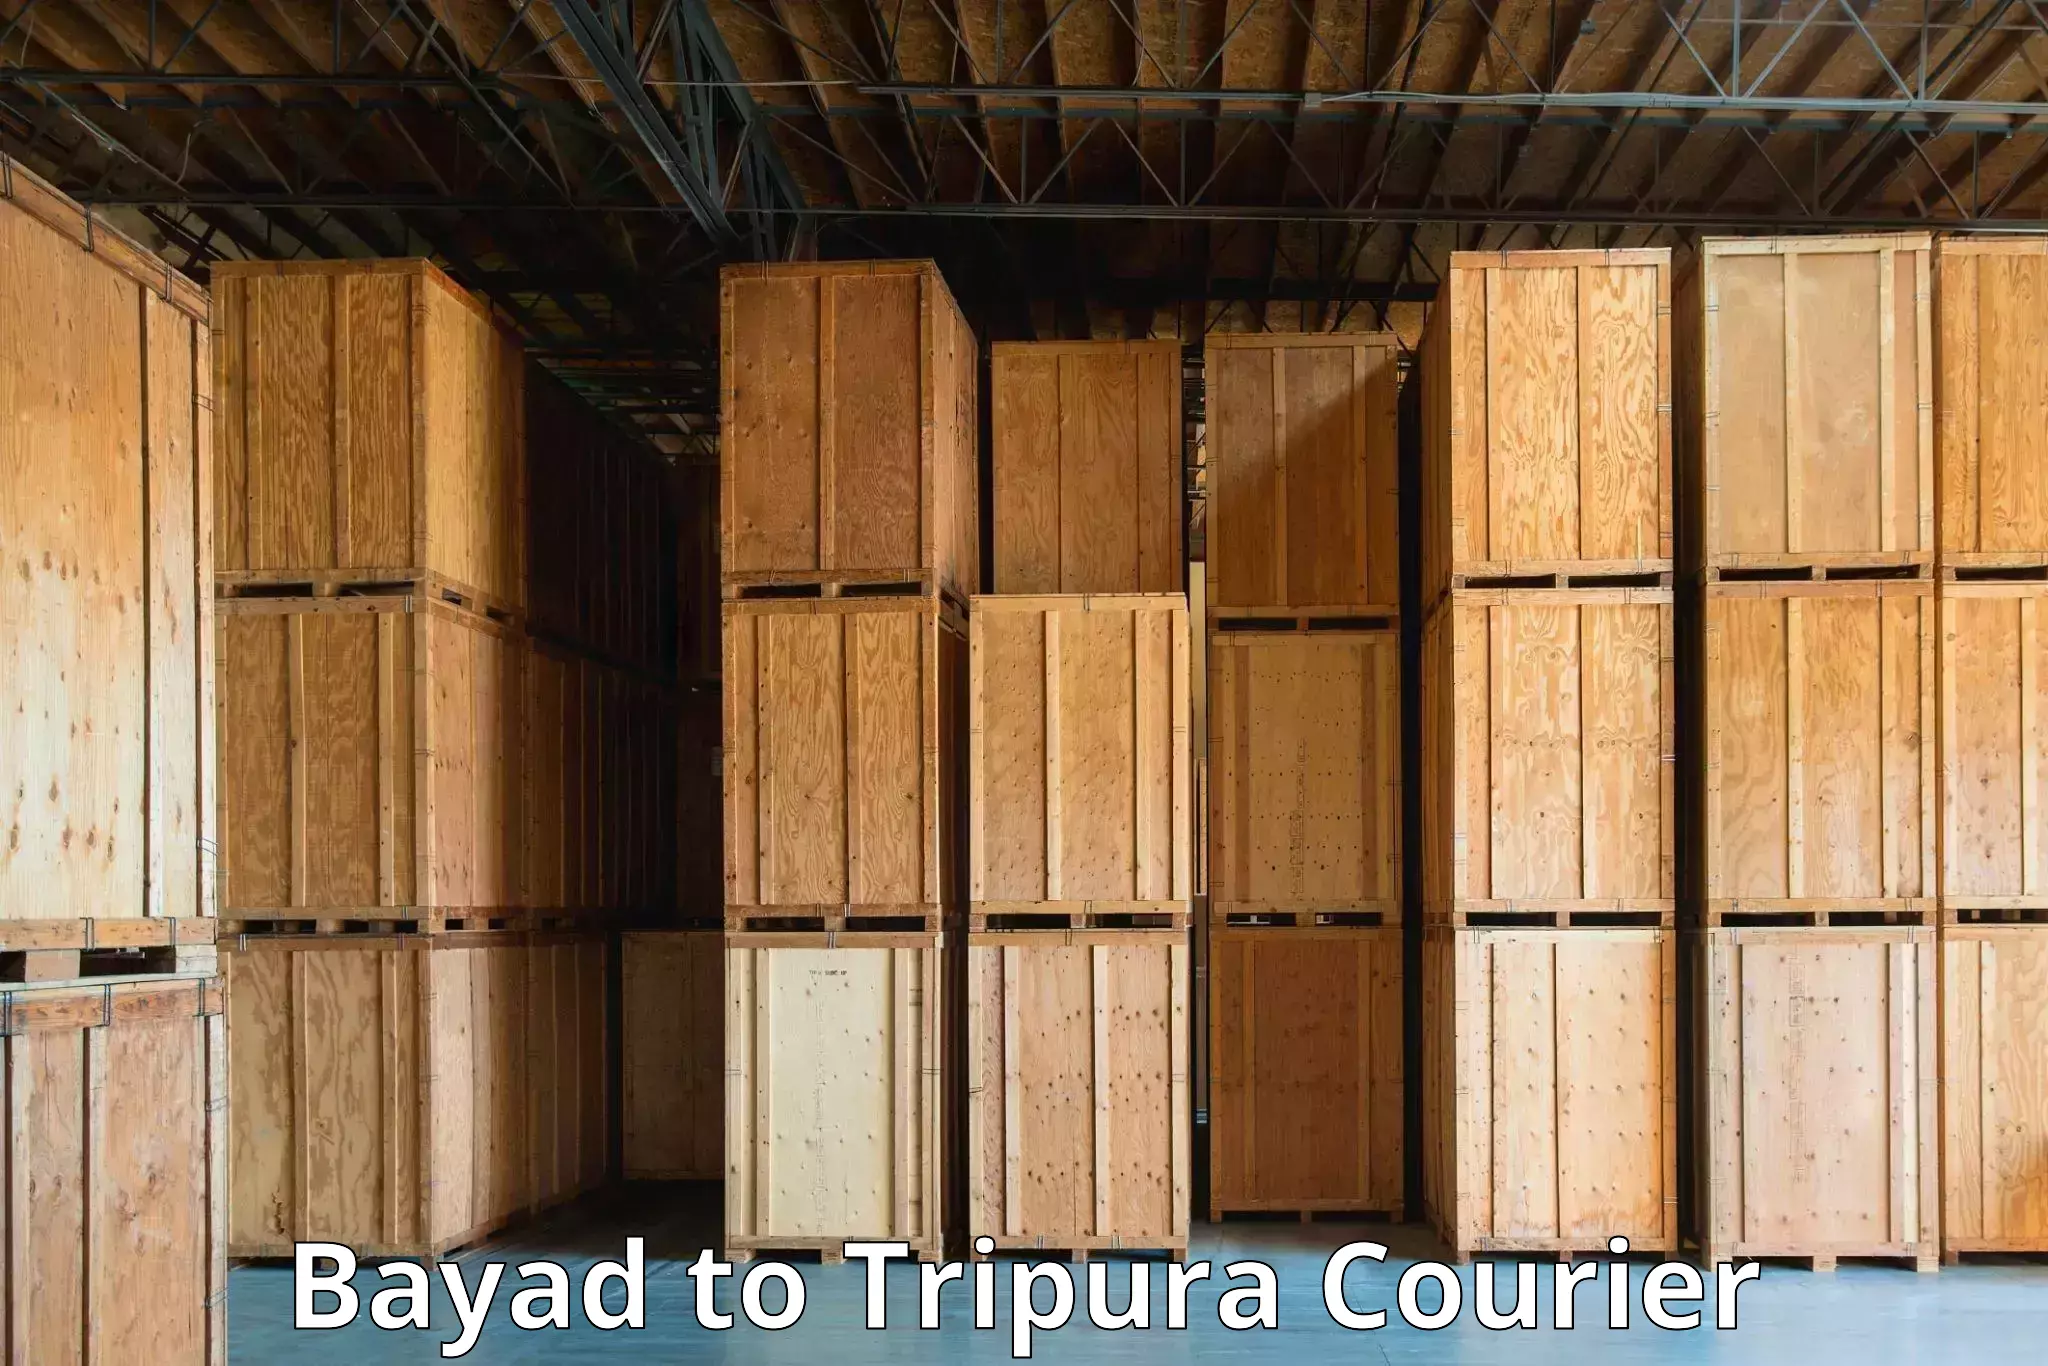 Express courier facilities Bayad to IIIT Agartala